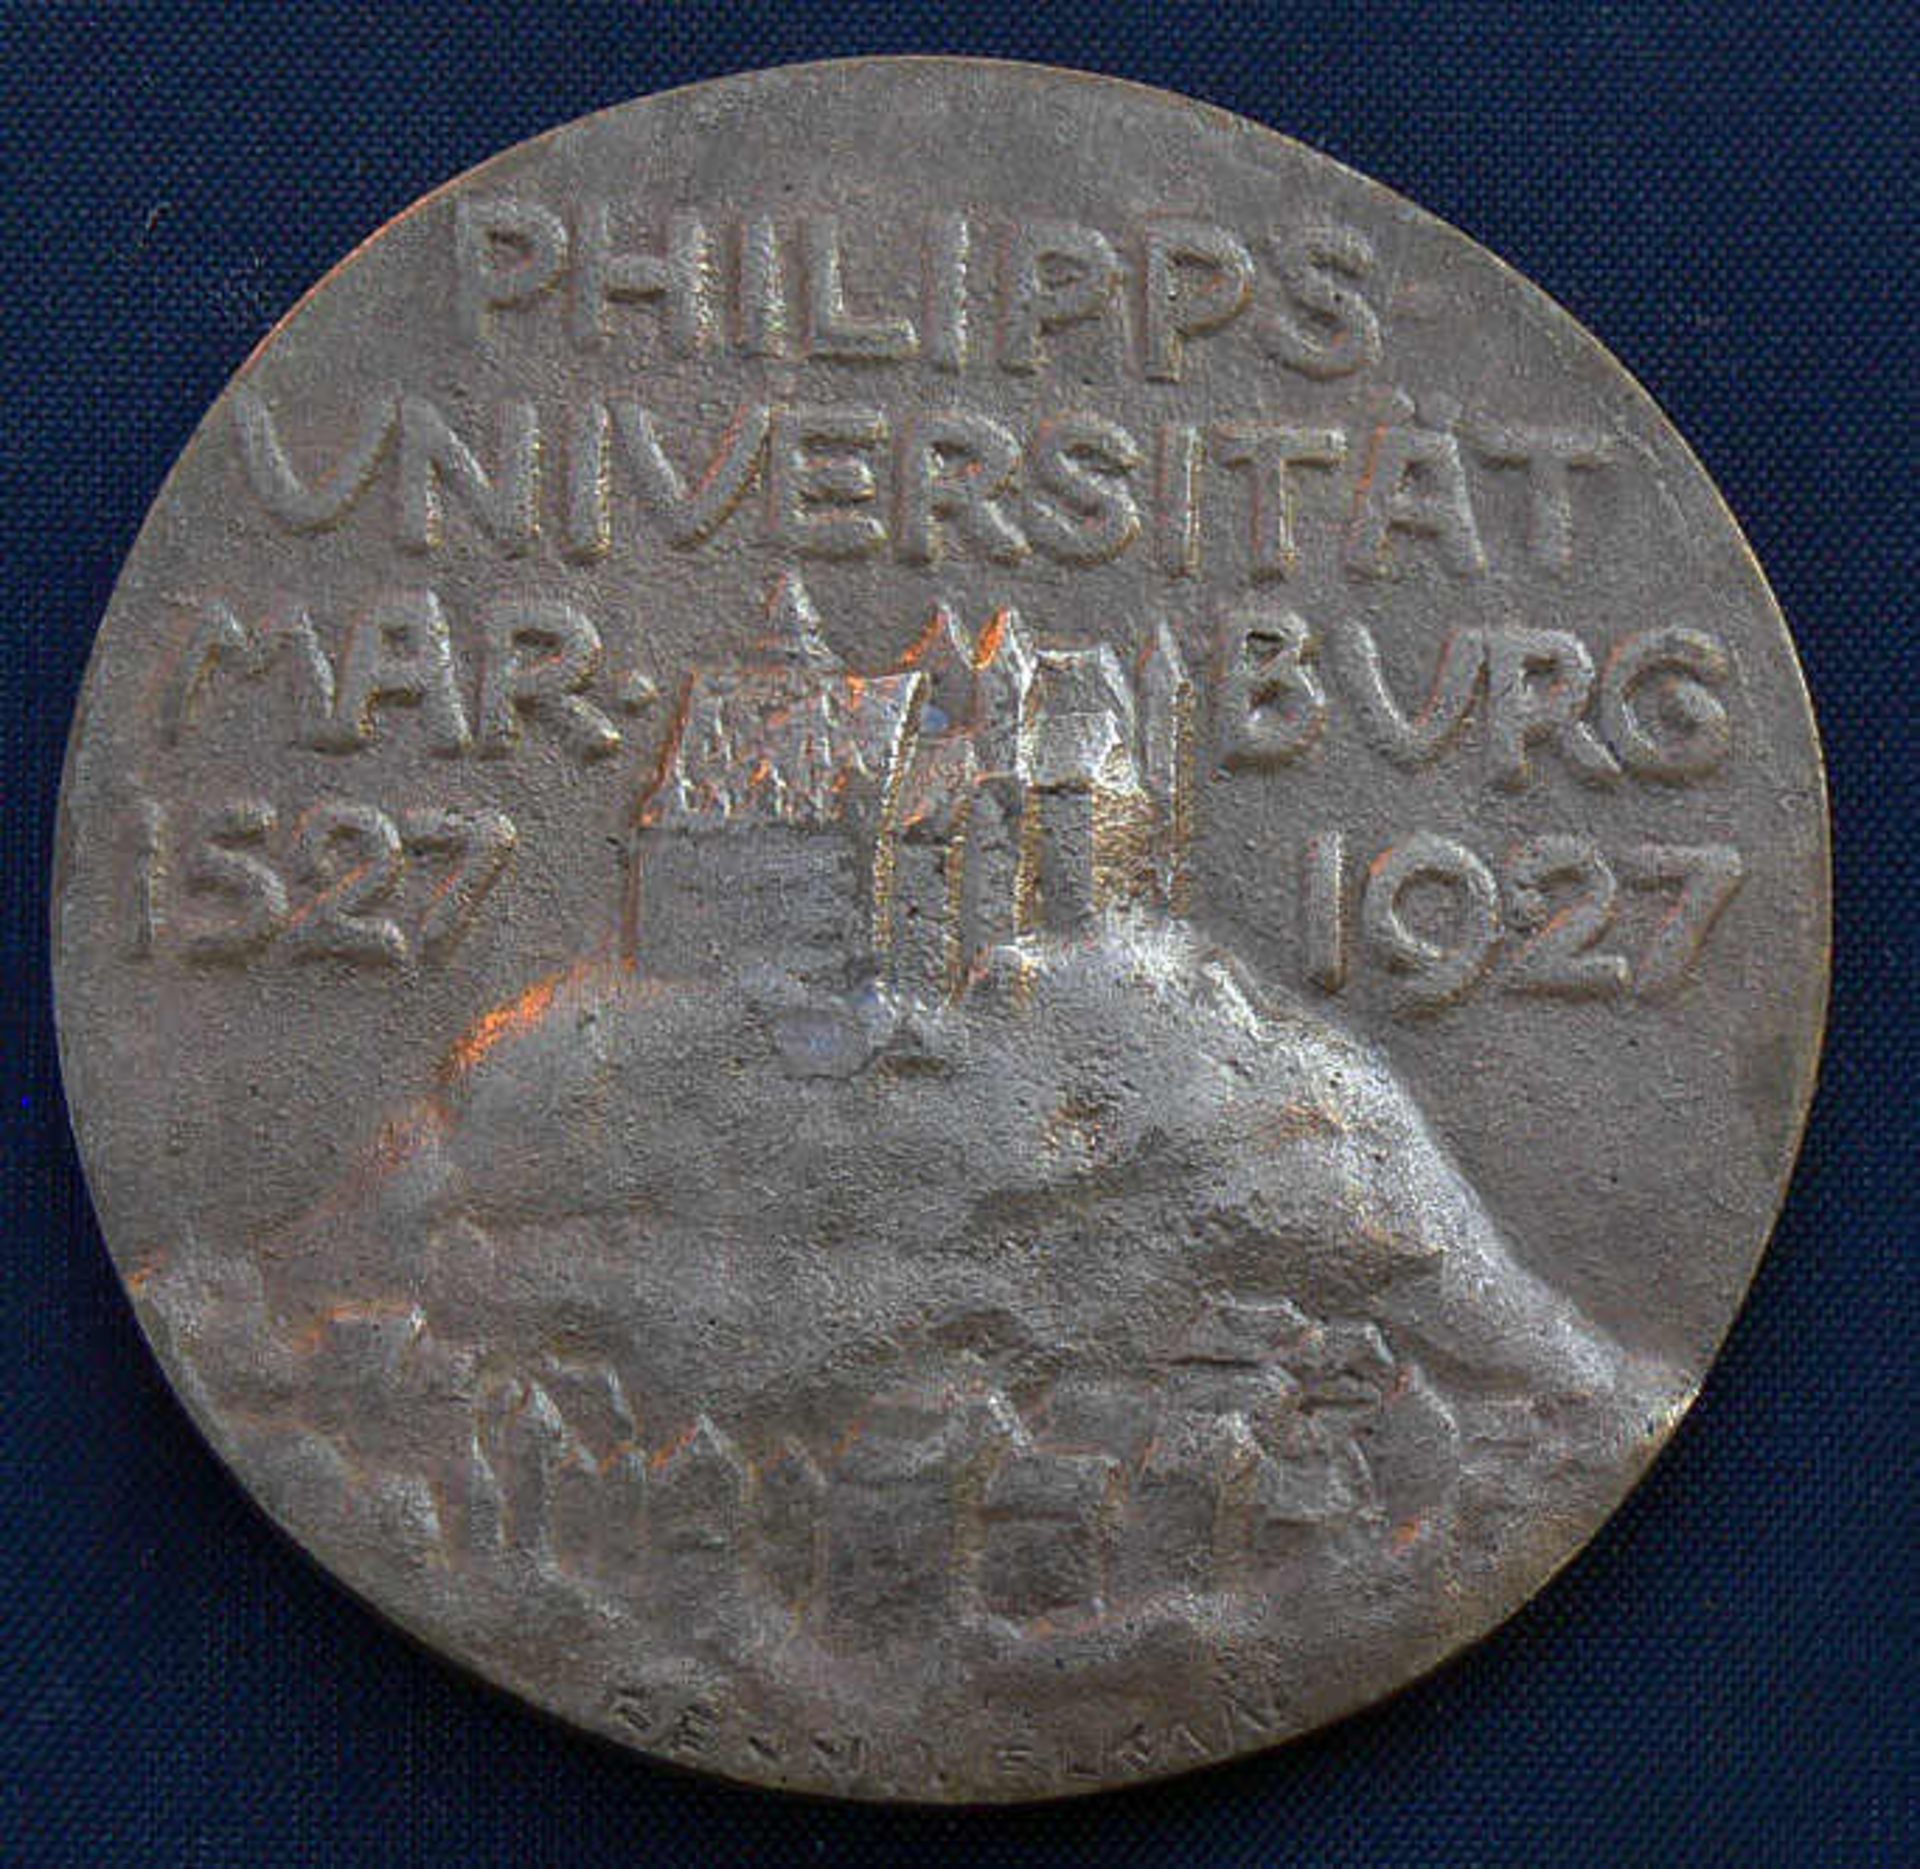 Medaille 1927, "400 Jahrfeier Philipps-Universität Marburg 1527-1927". Guter ZustandMindestpreis: 10 - Image 2 of 2